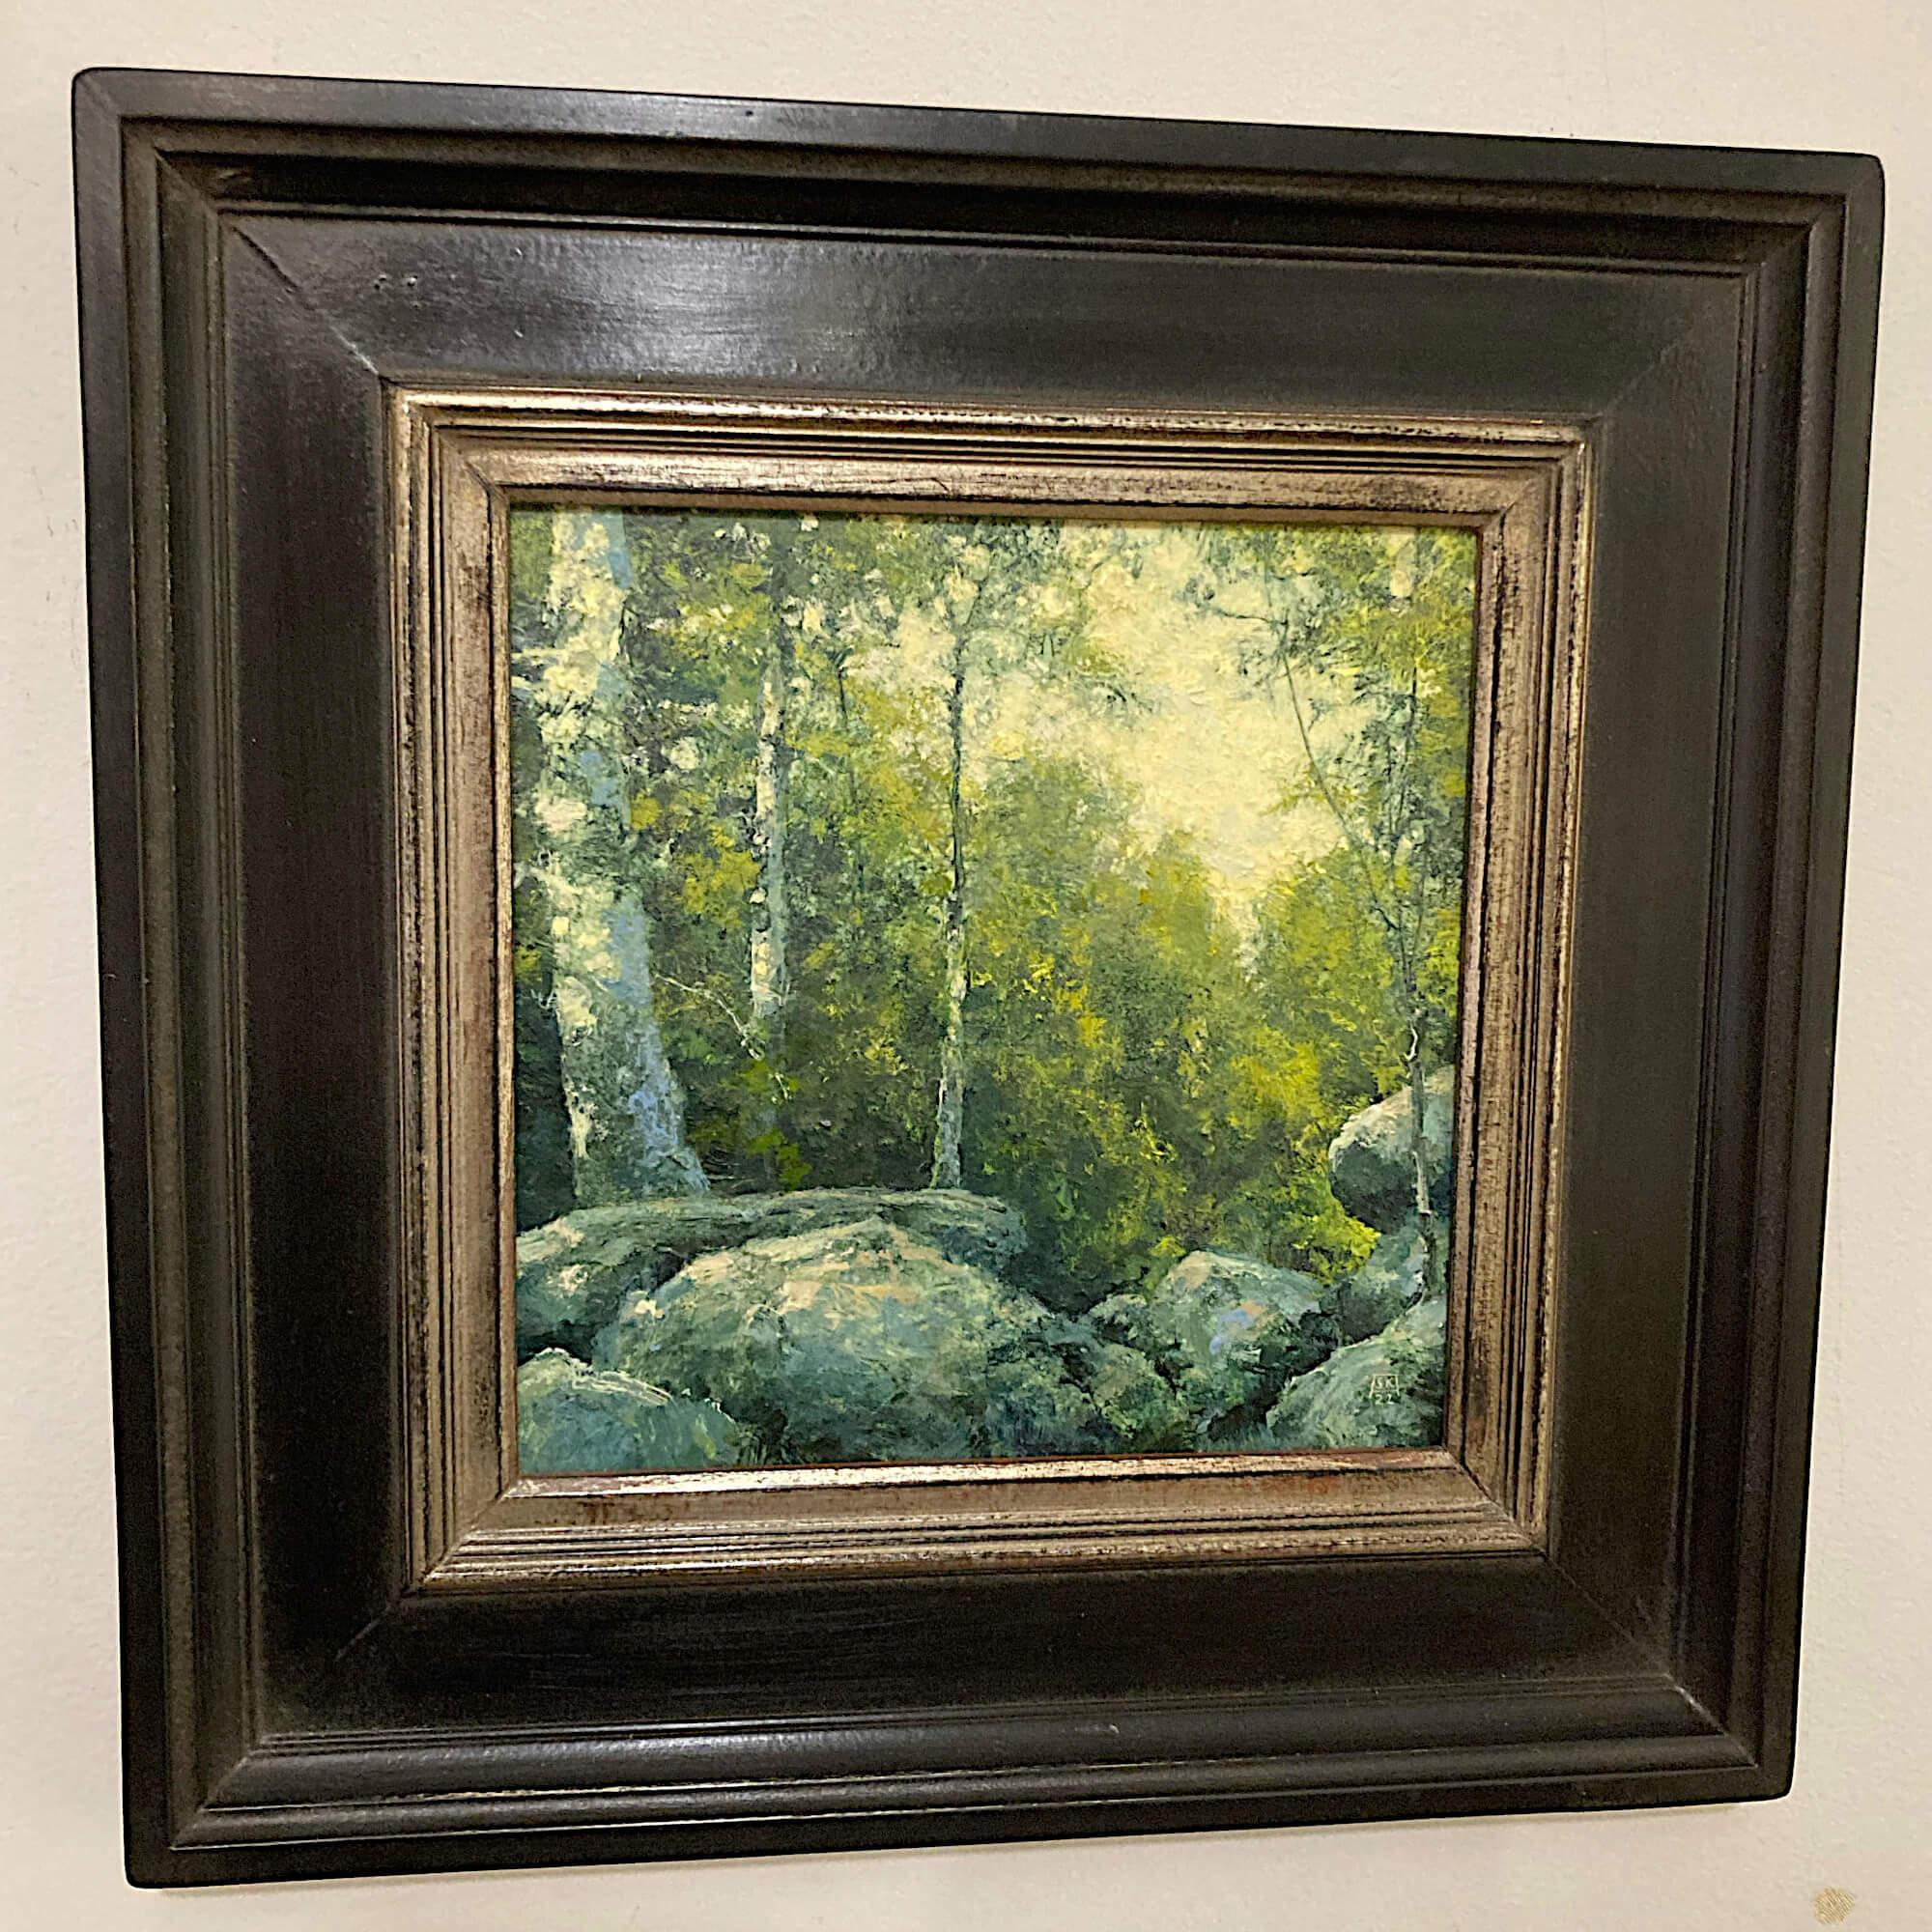 When Last We Met, Original Oil Painting - Brown Landscape Painting by Shawn Krueger